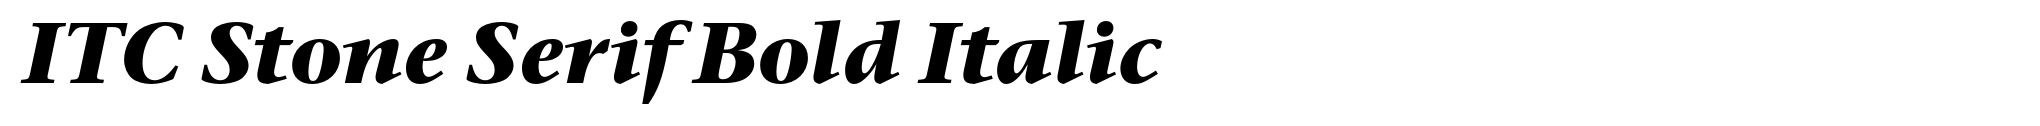 ITC Stone Serif Bold Italic image